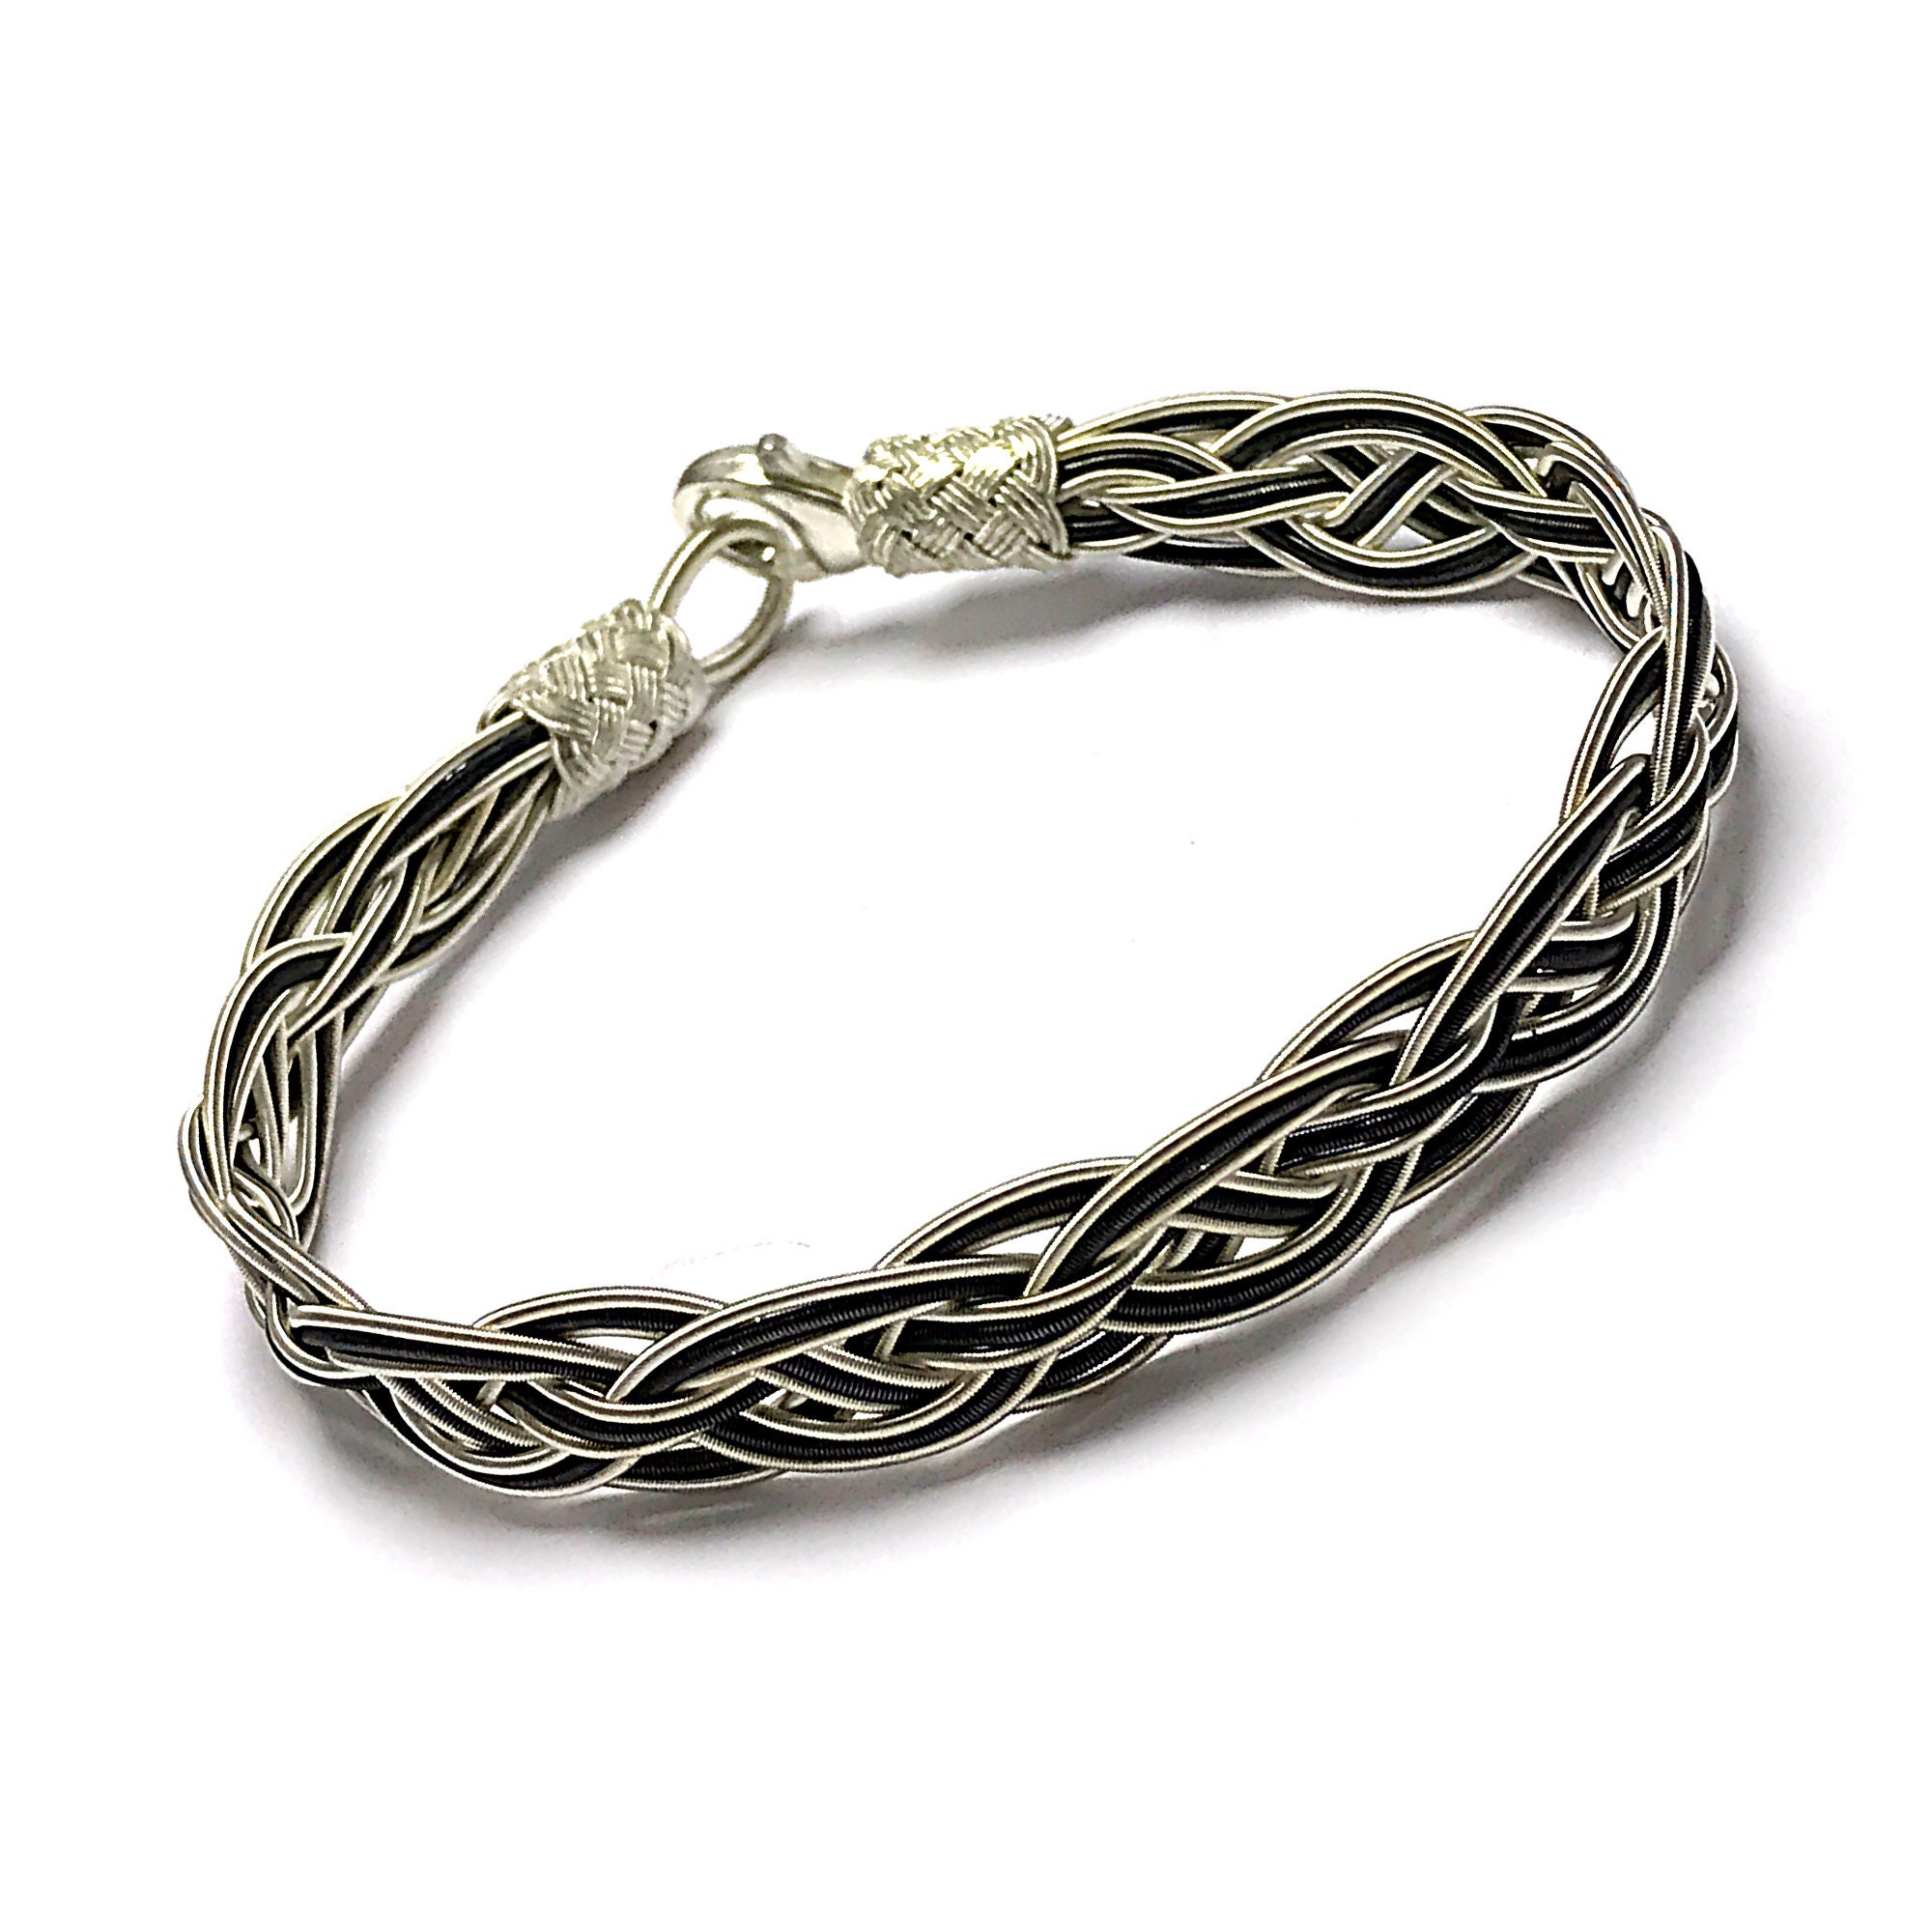 Braid Silver Bracelet Adjustable Jewellery Unisex | Etsy